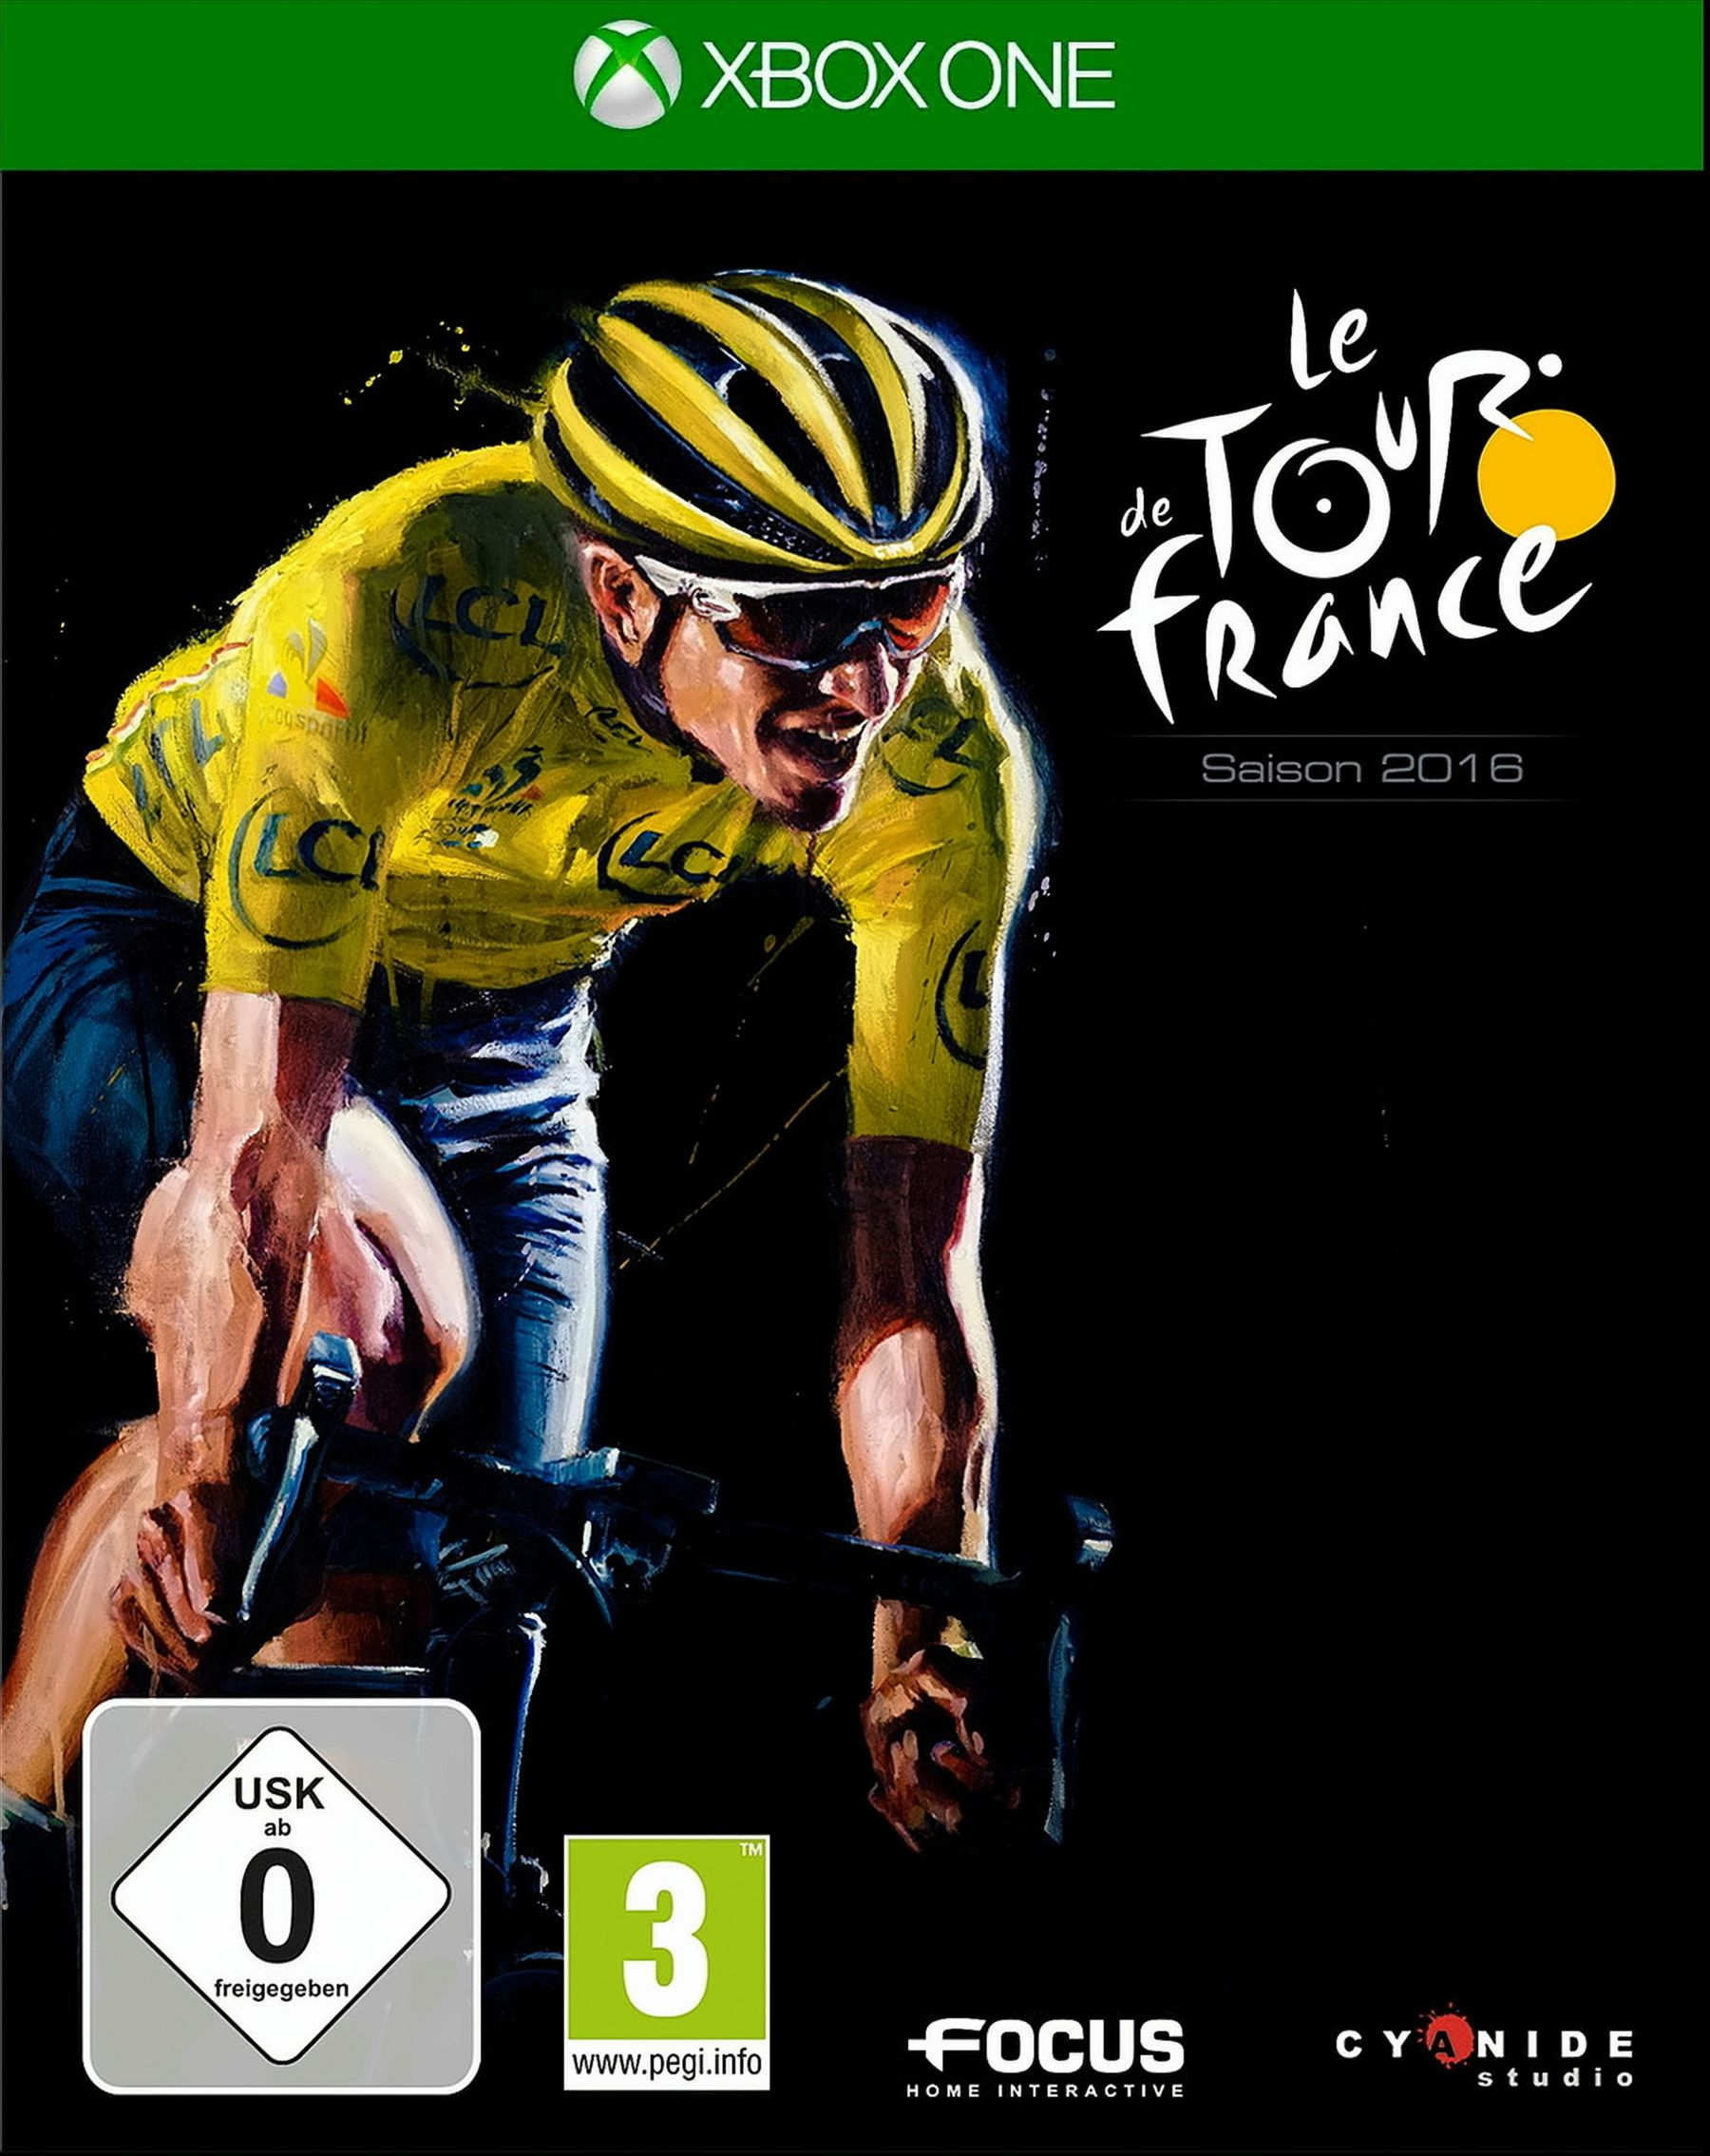 - France Tour One] de [Xbox 2016 Le